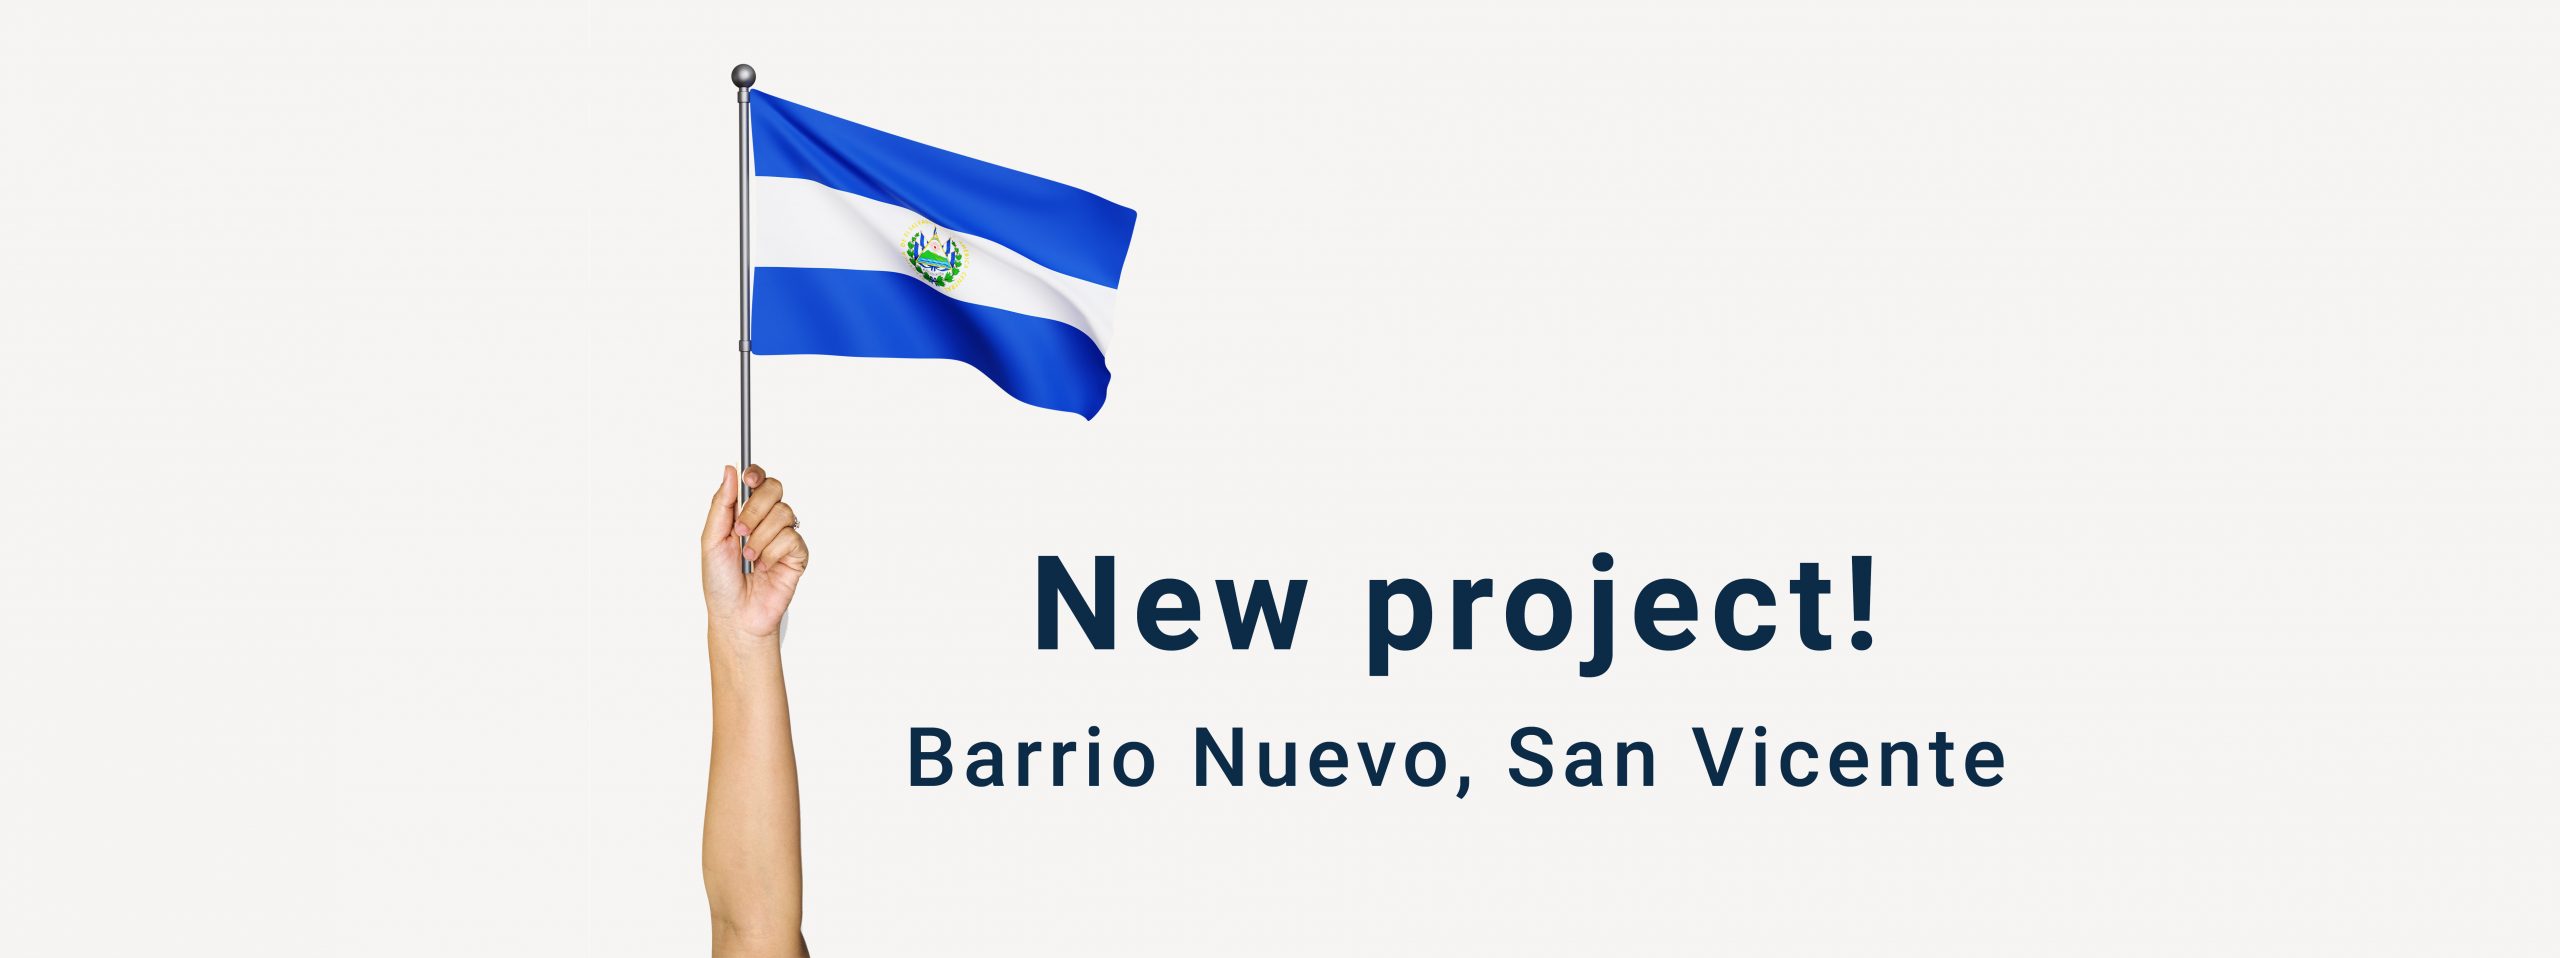 New Solar Project El Salvador Barrio Nuevo